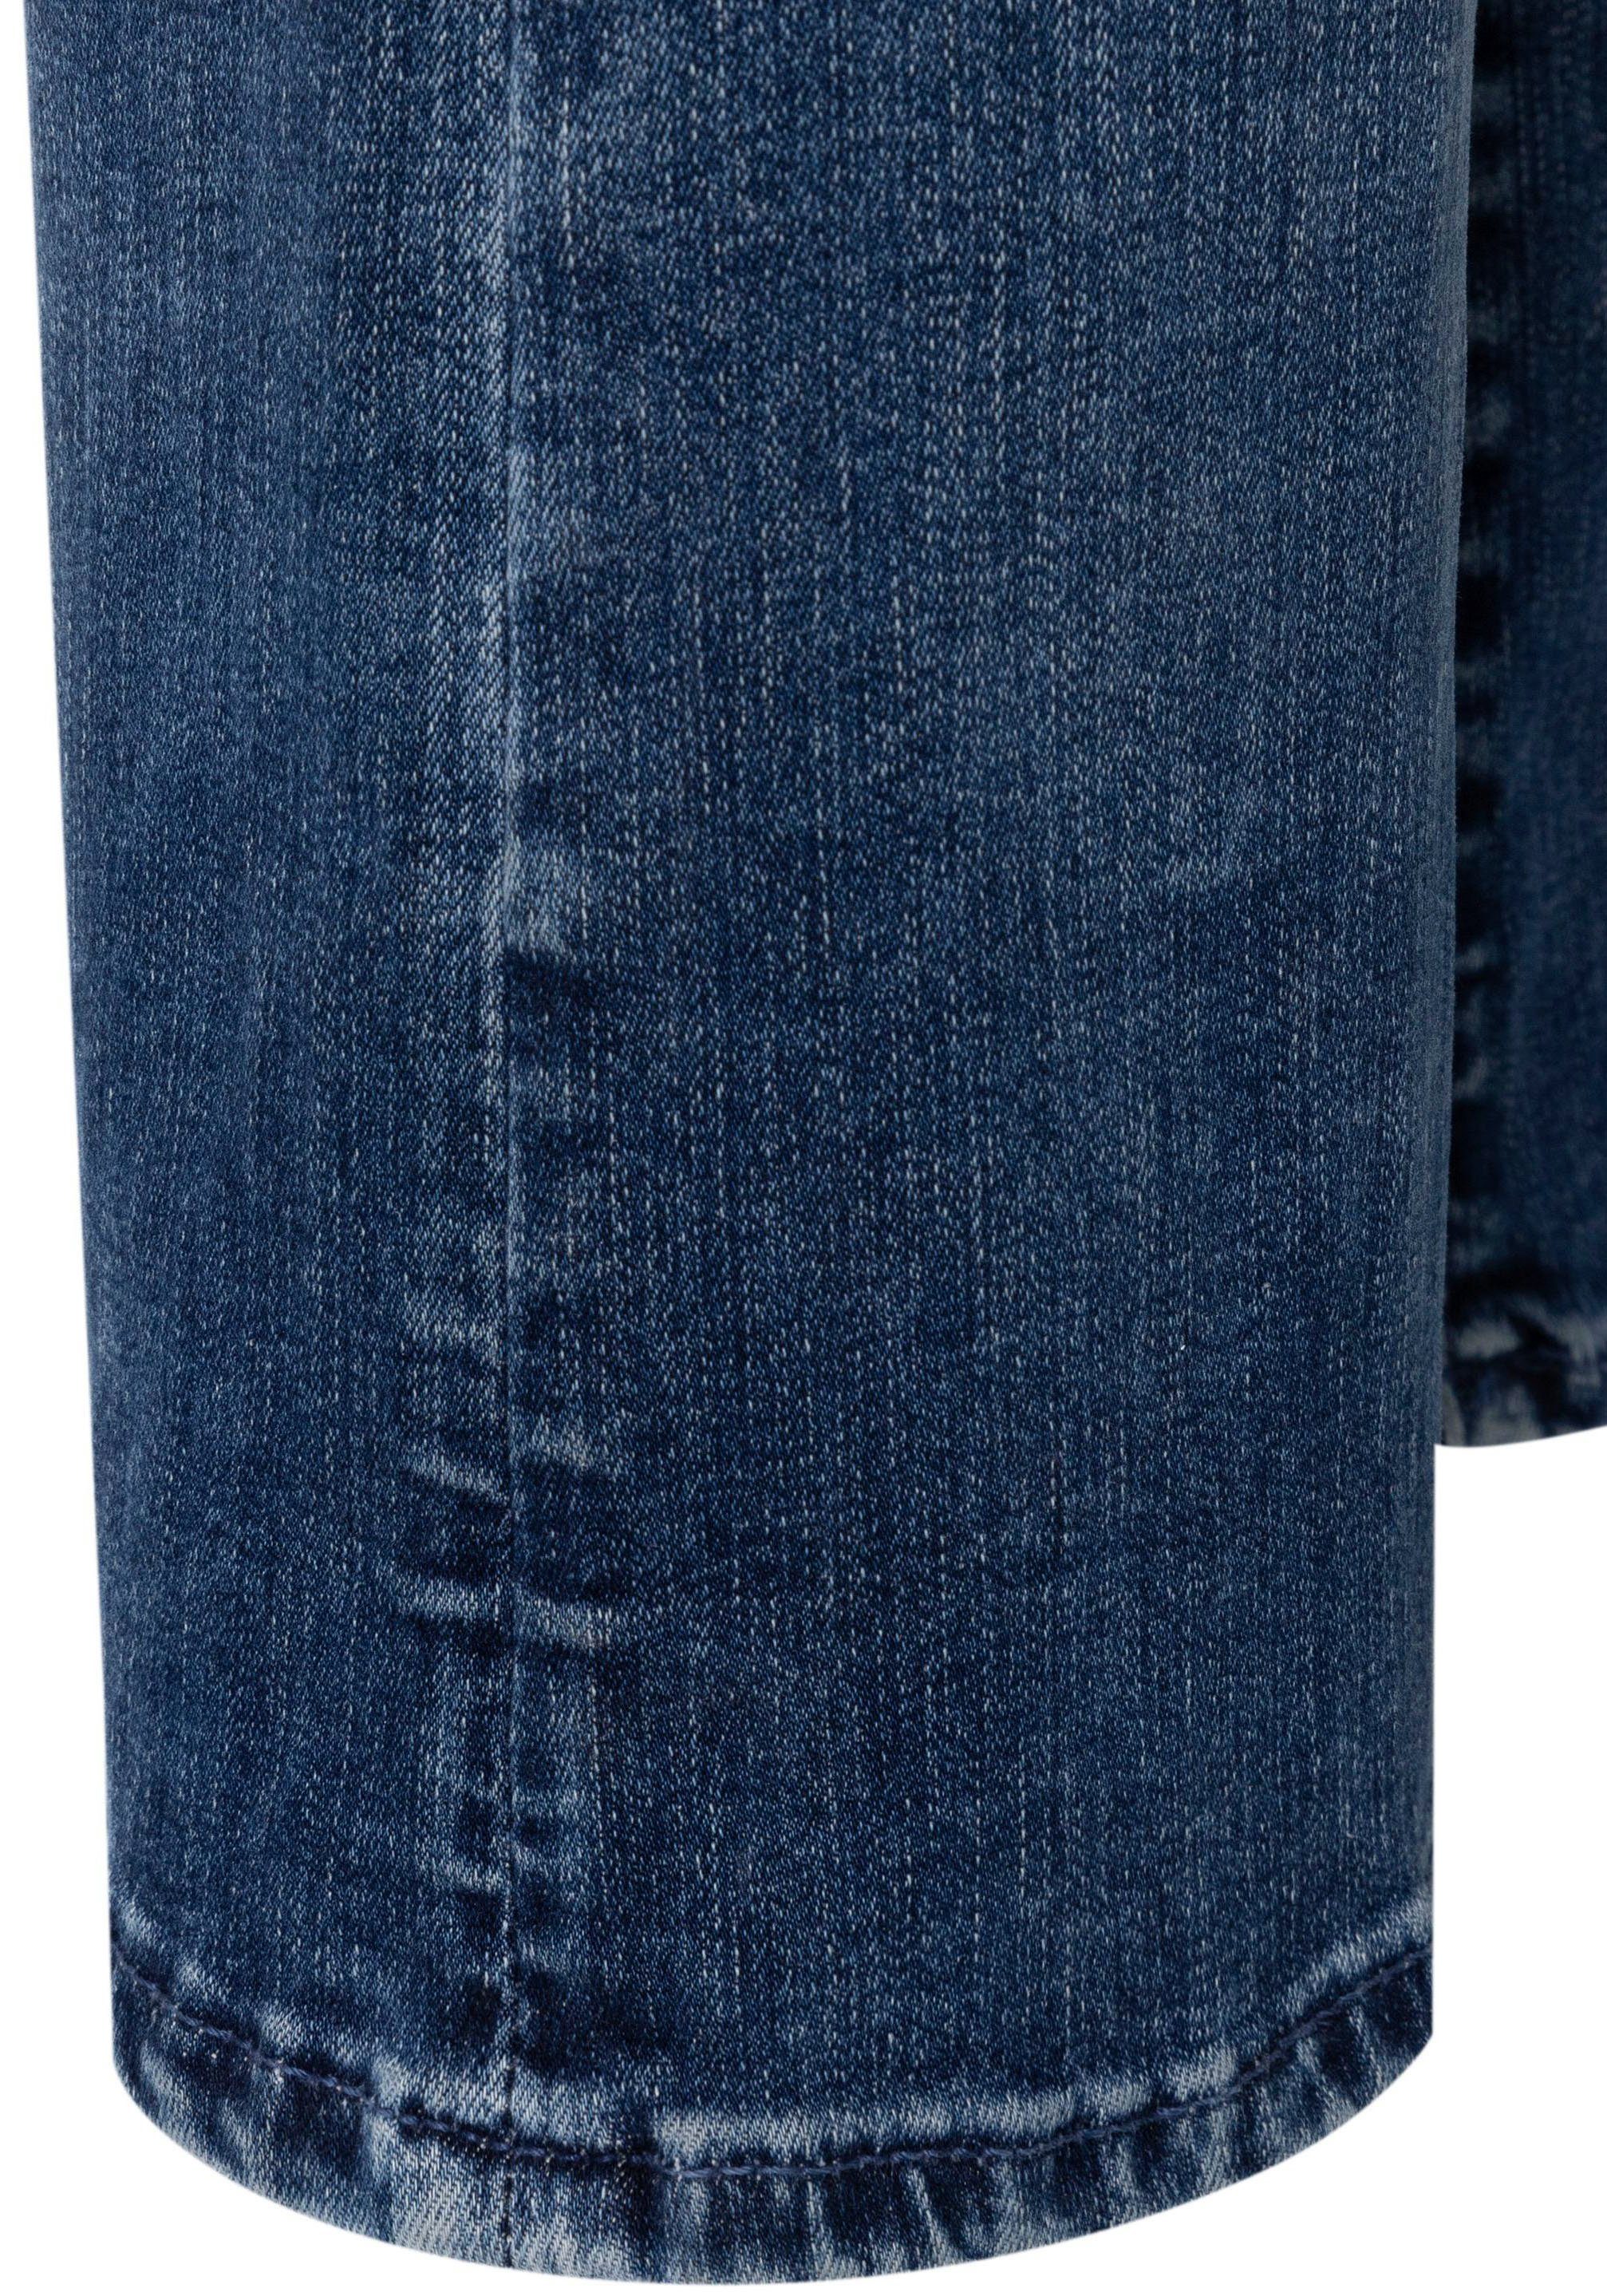 3/4-Jeans blue modisch verkürzt dark leicht washed ausgestellt Saum und Dream Kick MAC